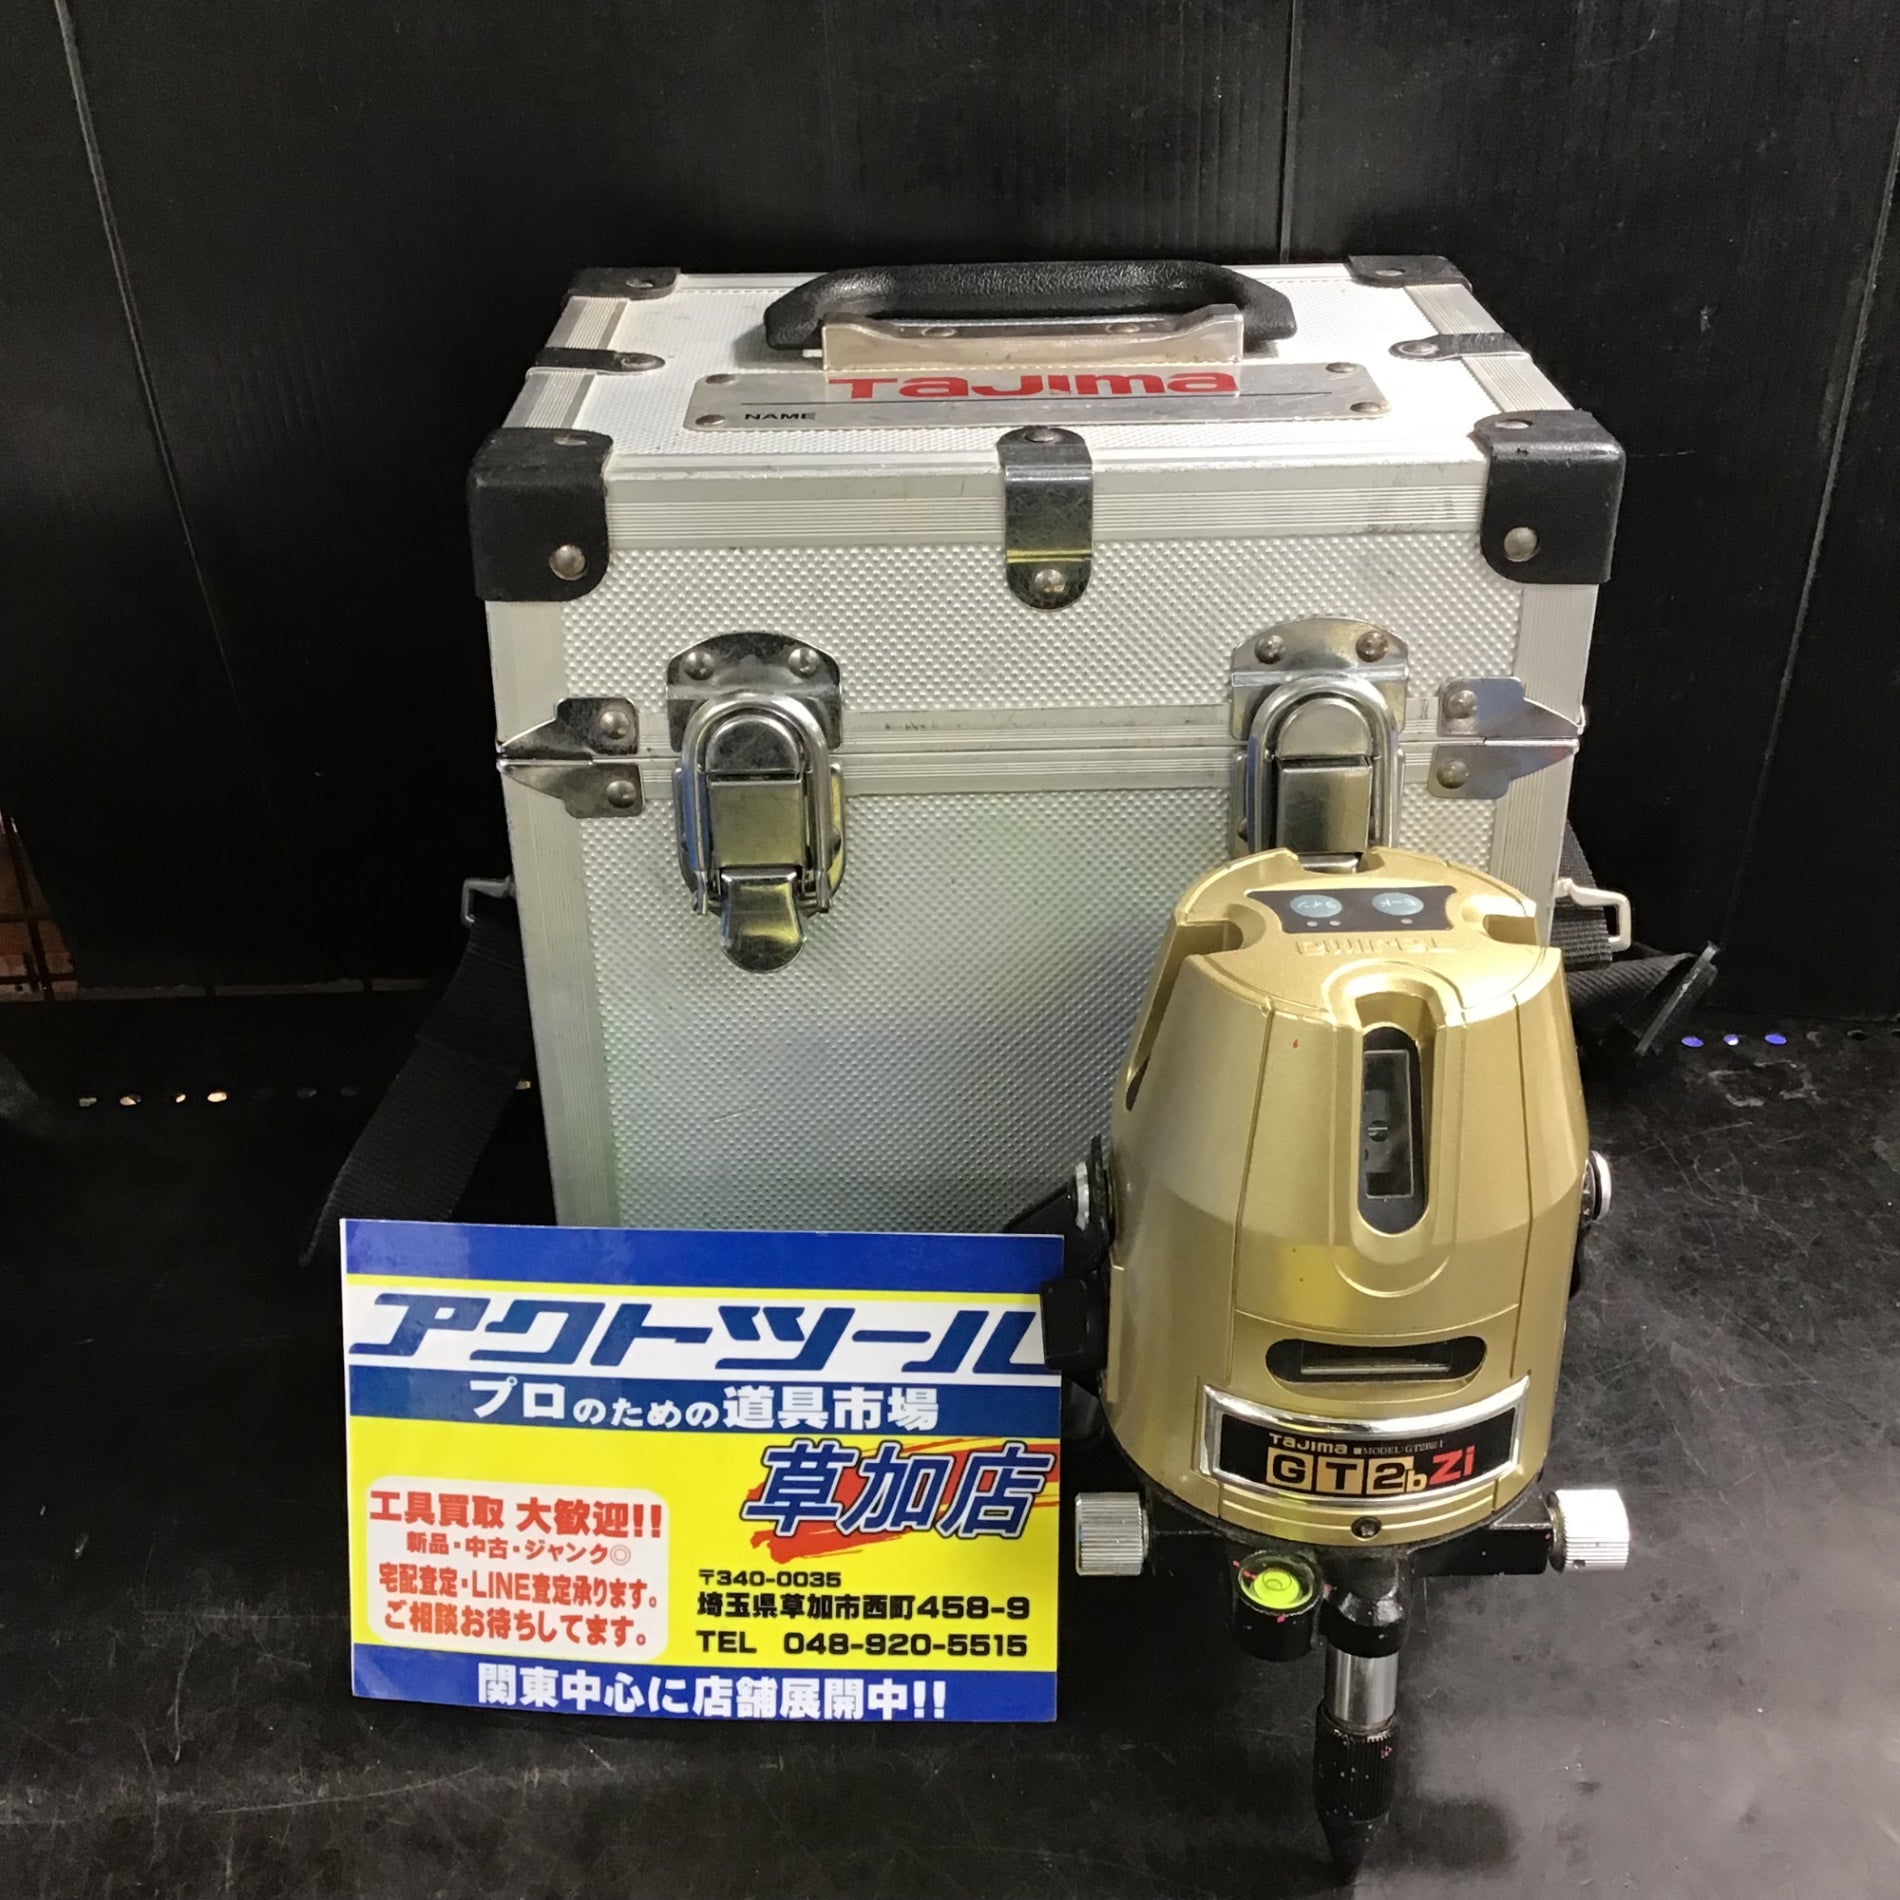 〇タジマ(Tajima) レーザー墨出し器 GT2bZi 縦・横・地墨 GT2BZ-I 